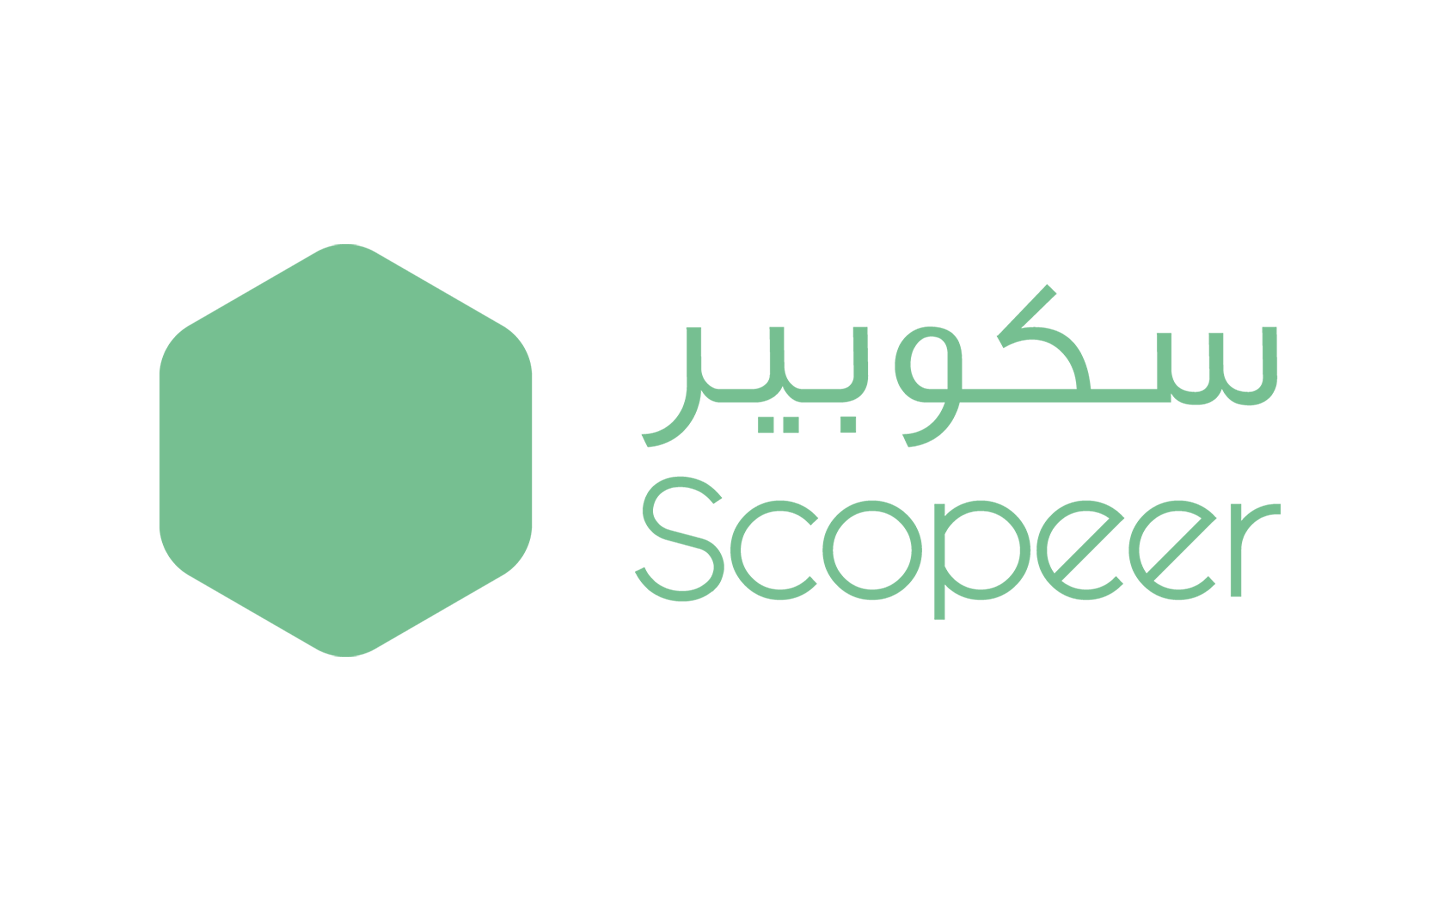 scopeer